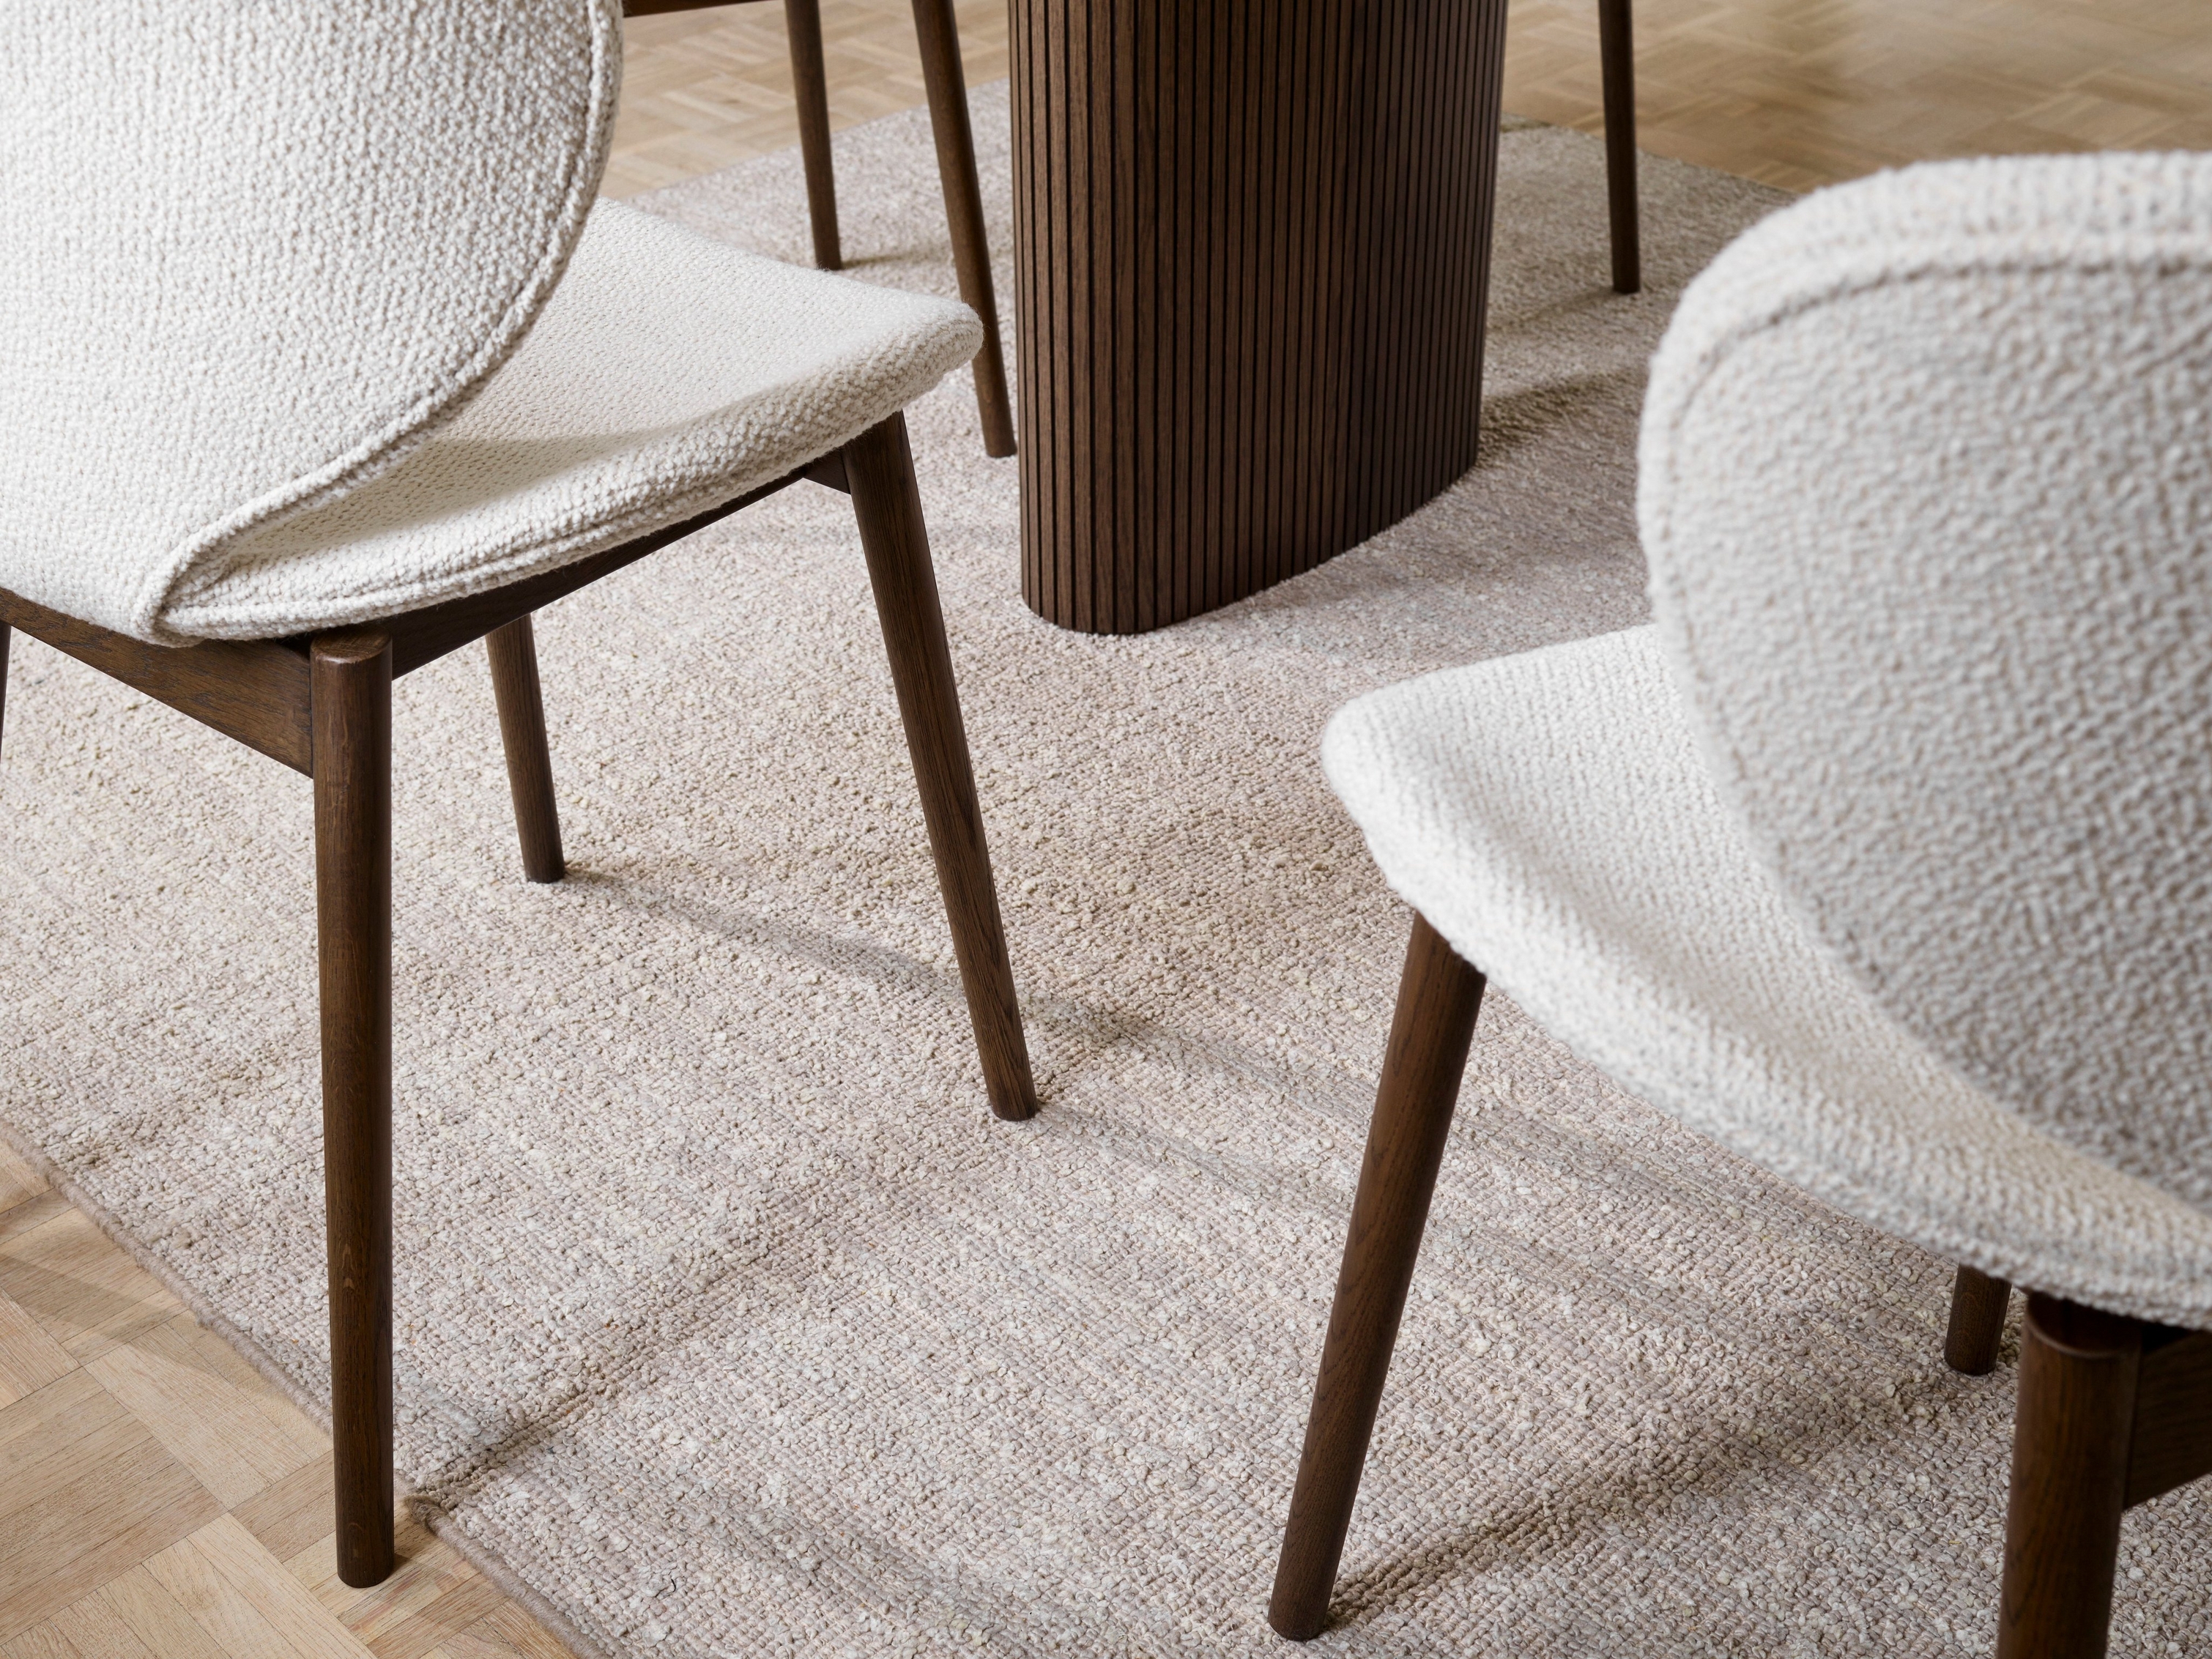 Textúrované stoličky Hamilton a koberec s dreveným stolom, zaostrené na detaily podlahy.